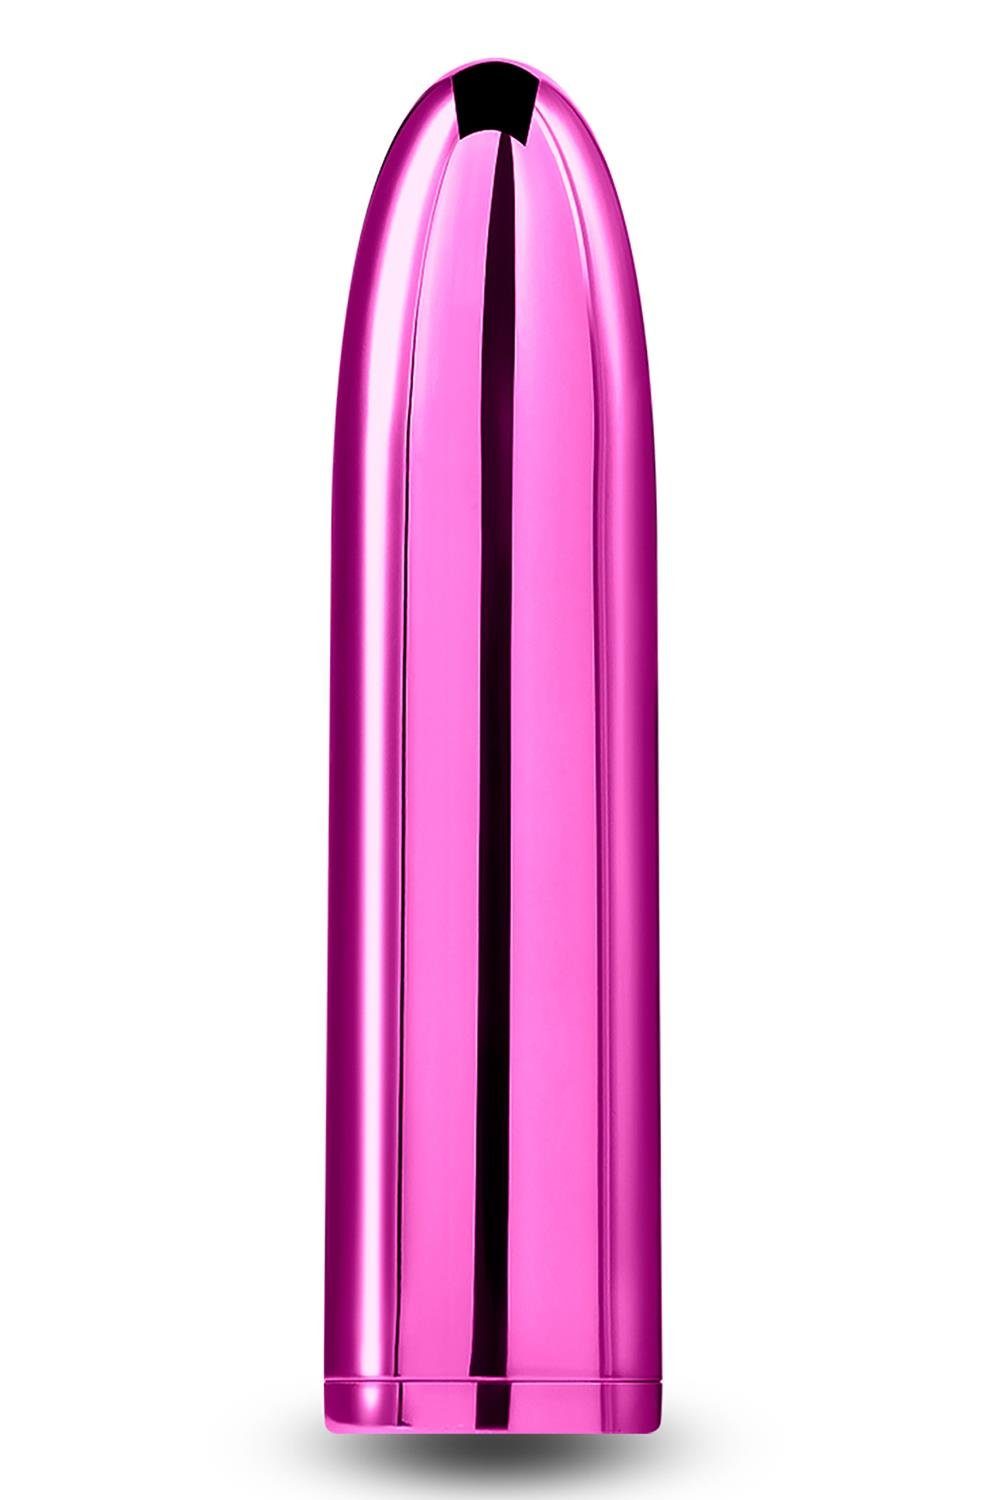 NS Novelties Mini-Vibrator Chroma Petite Bullet Pink